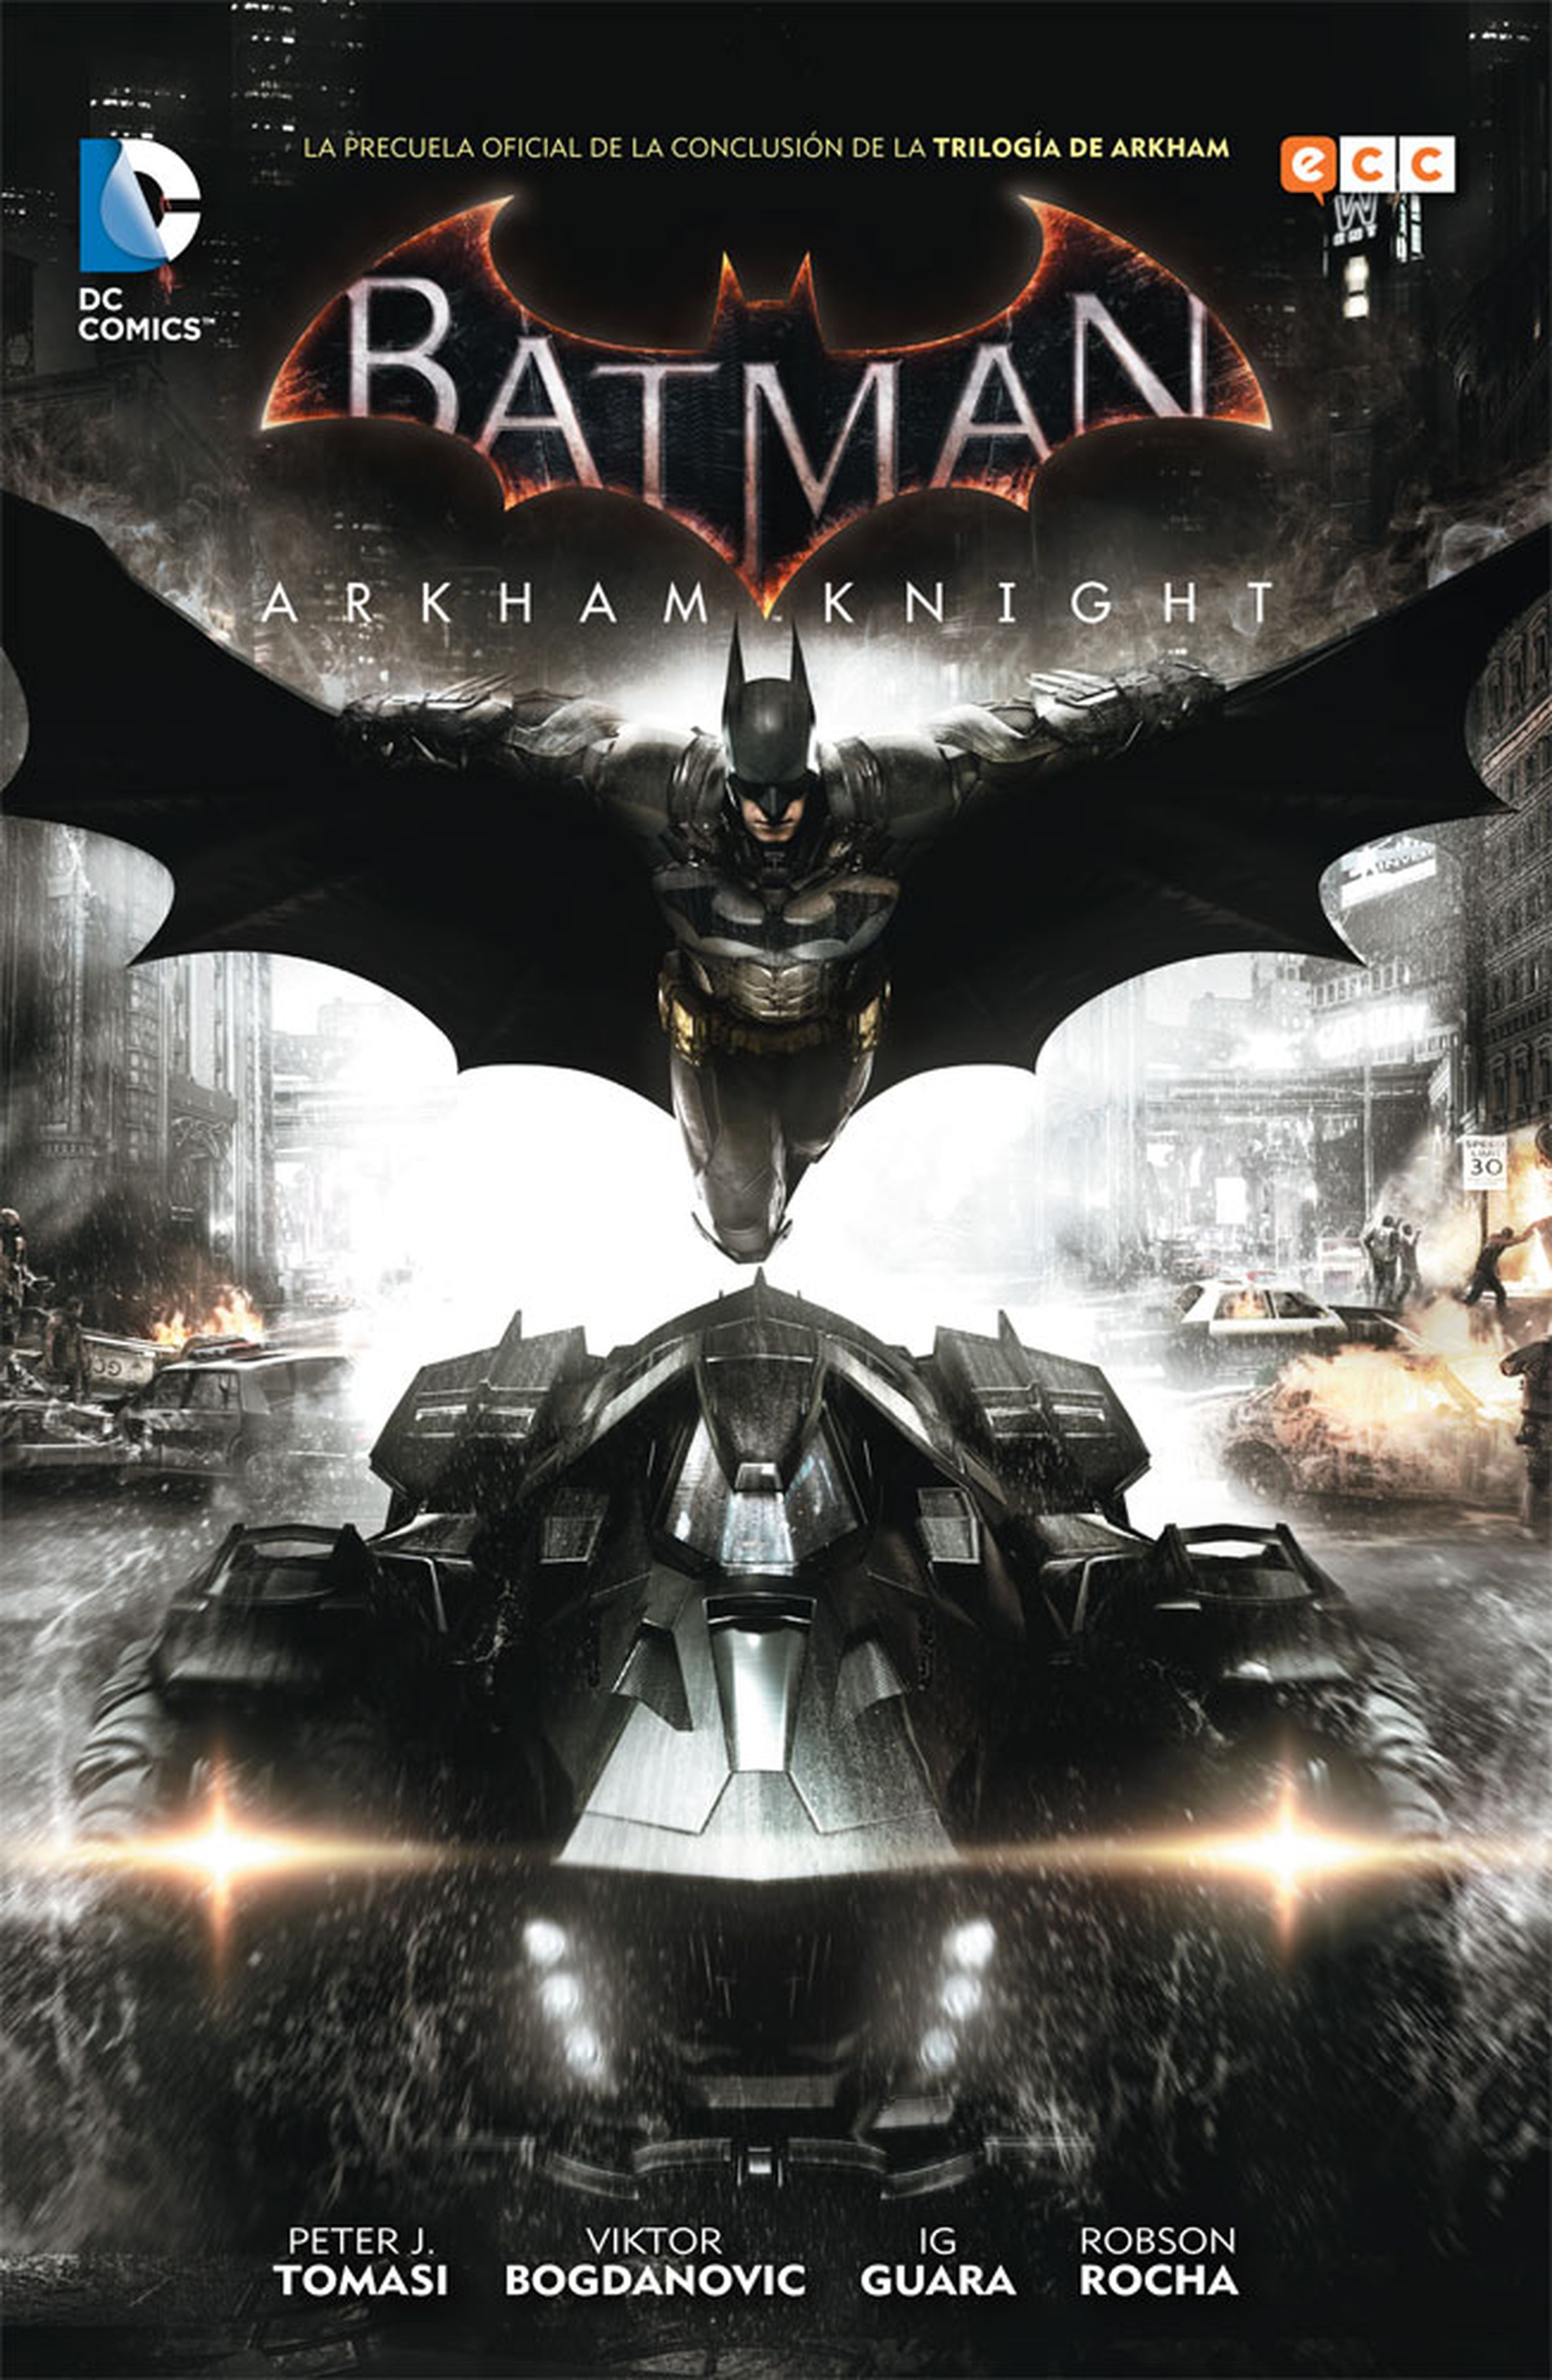 Concurso Batman Arkham Knight: ¡Sorteamos 3 cómics!